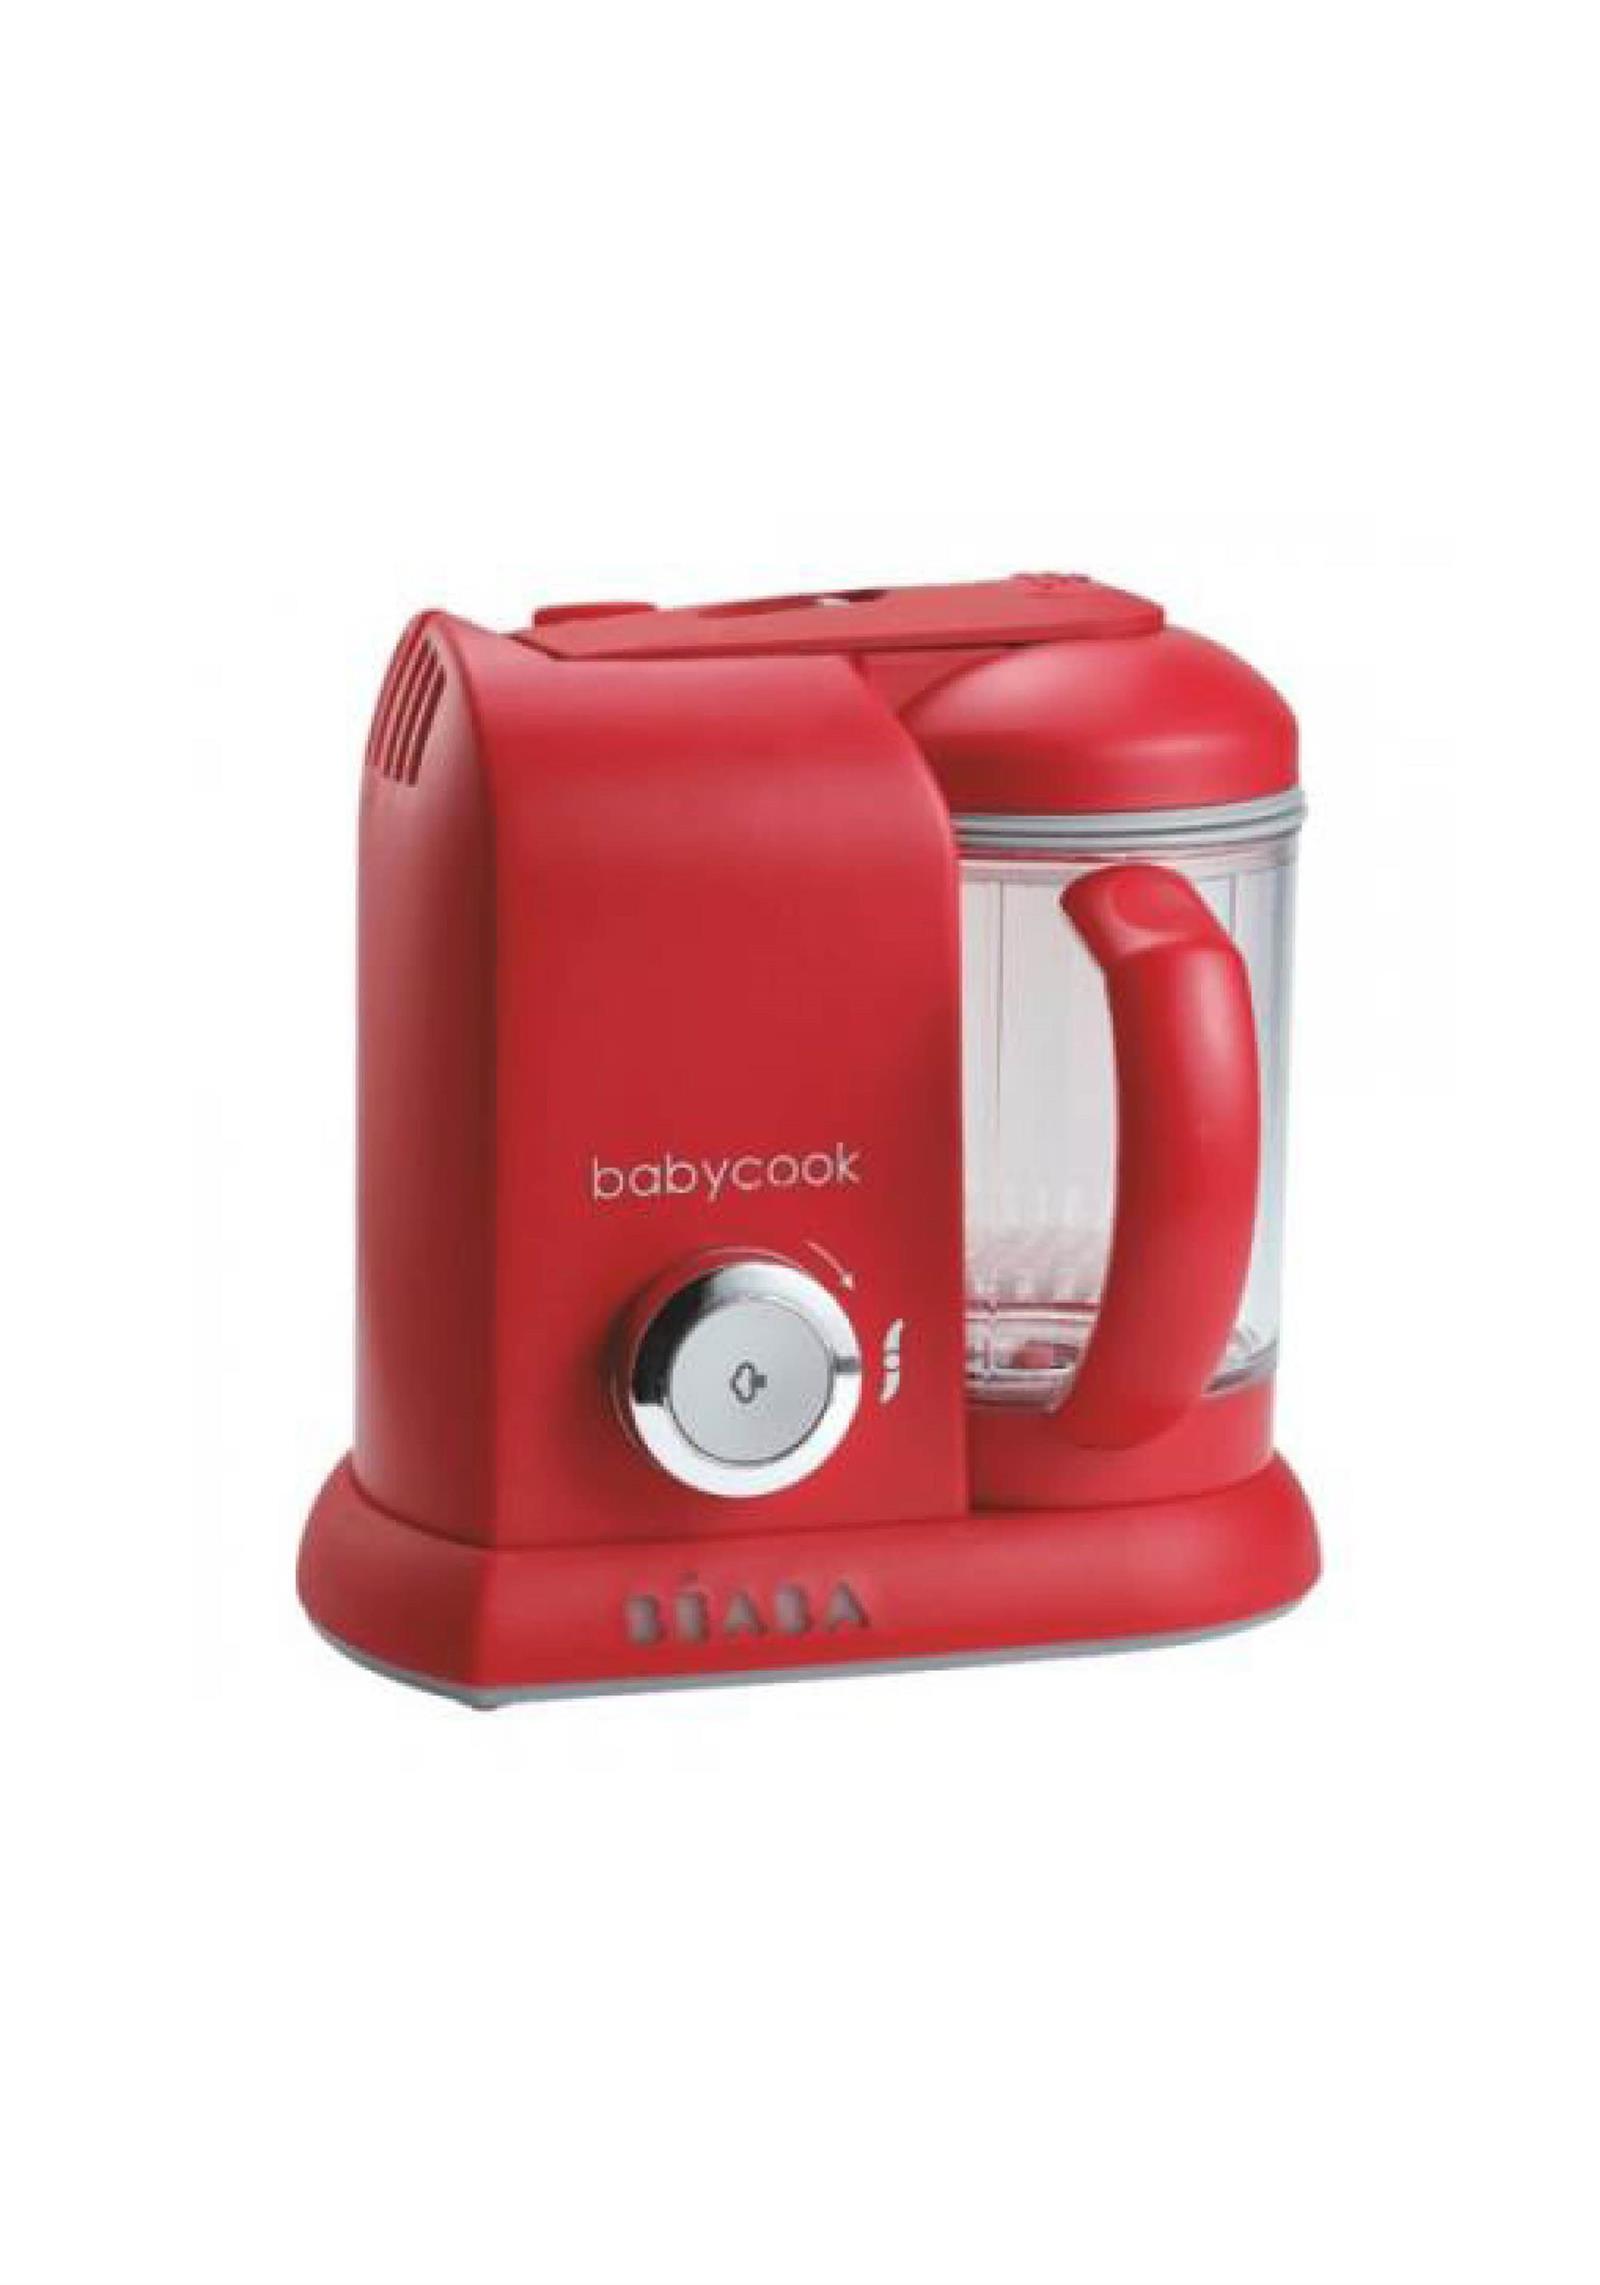 Robot cocina Babycook Solo Rojo Beaba fnac. cosas cuquis para regalar en navidad 22